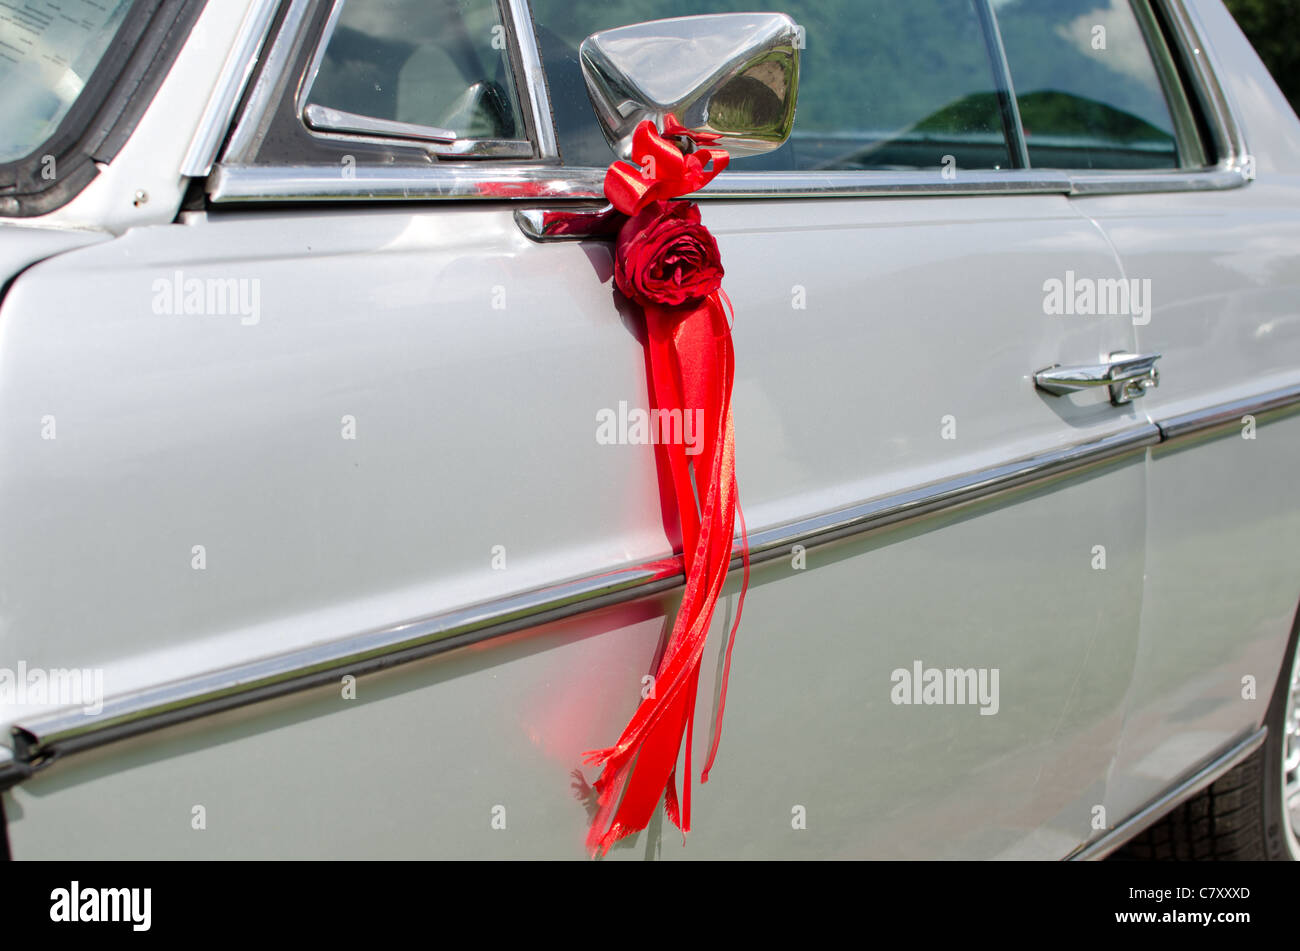 Rote Rose mit einer Band Dekoration auf einem Autospiegel Stockfotografie -  Alamy